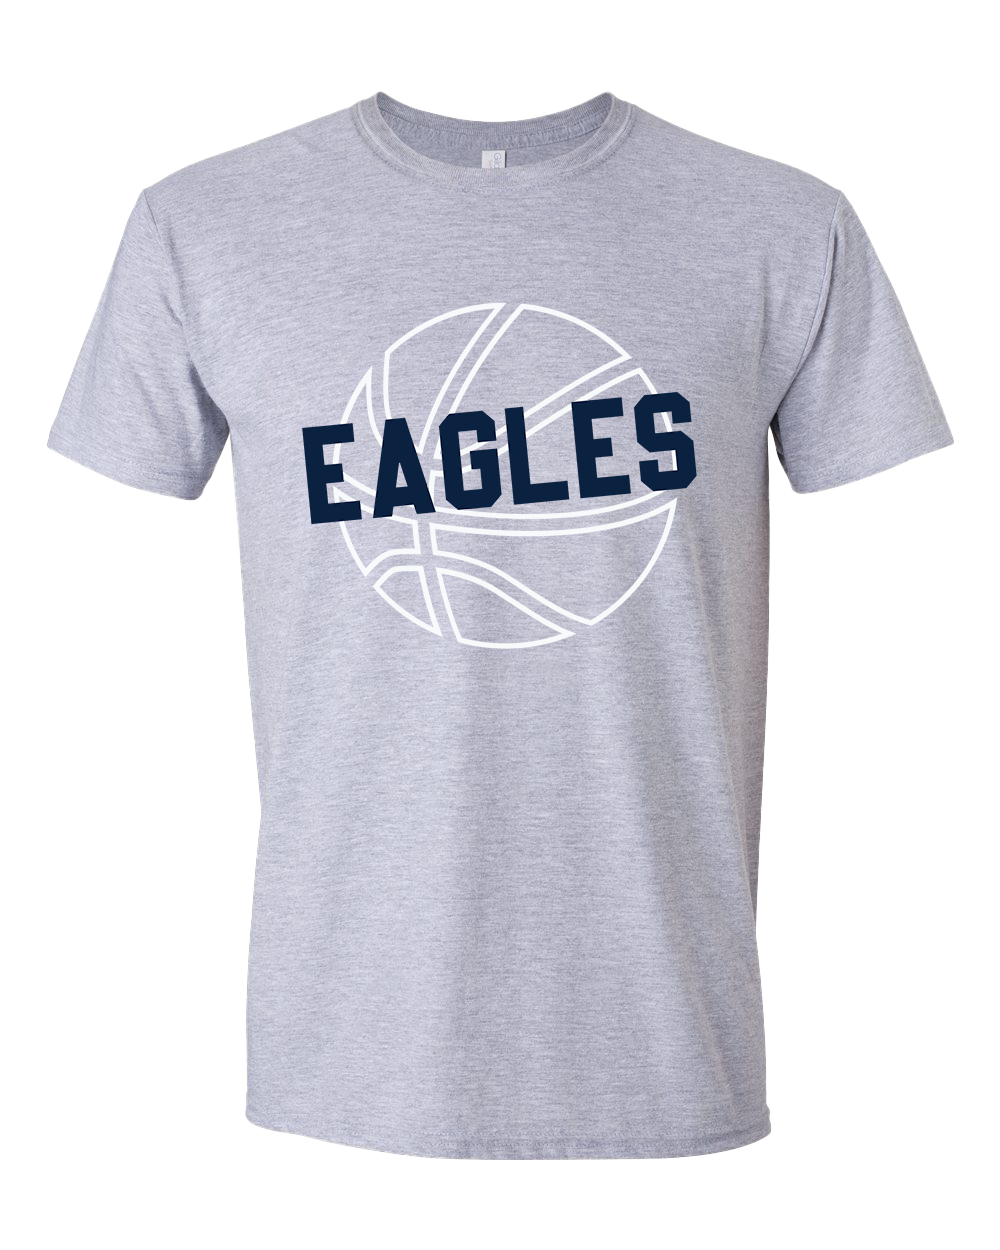 Oak Hill Eagles Basketball Tshirt - Sports Grey